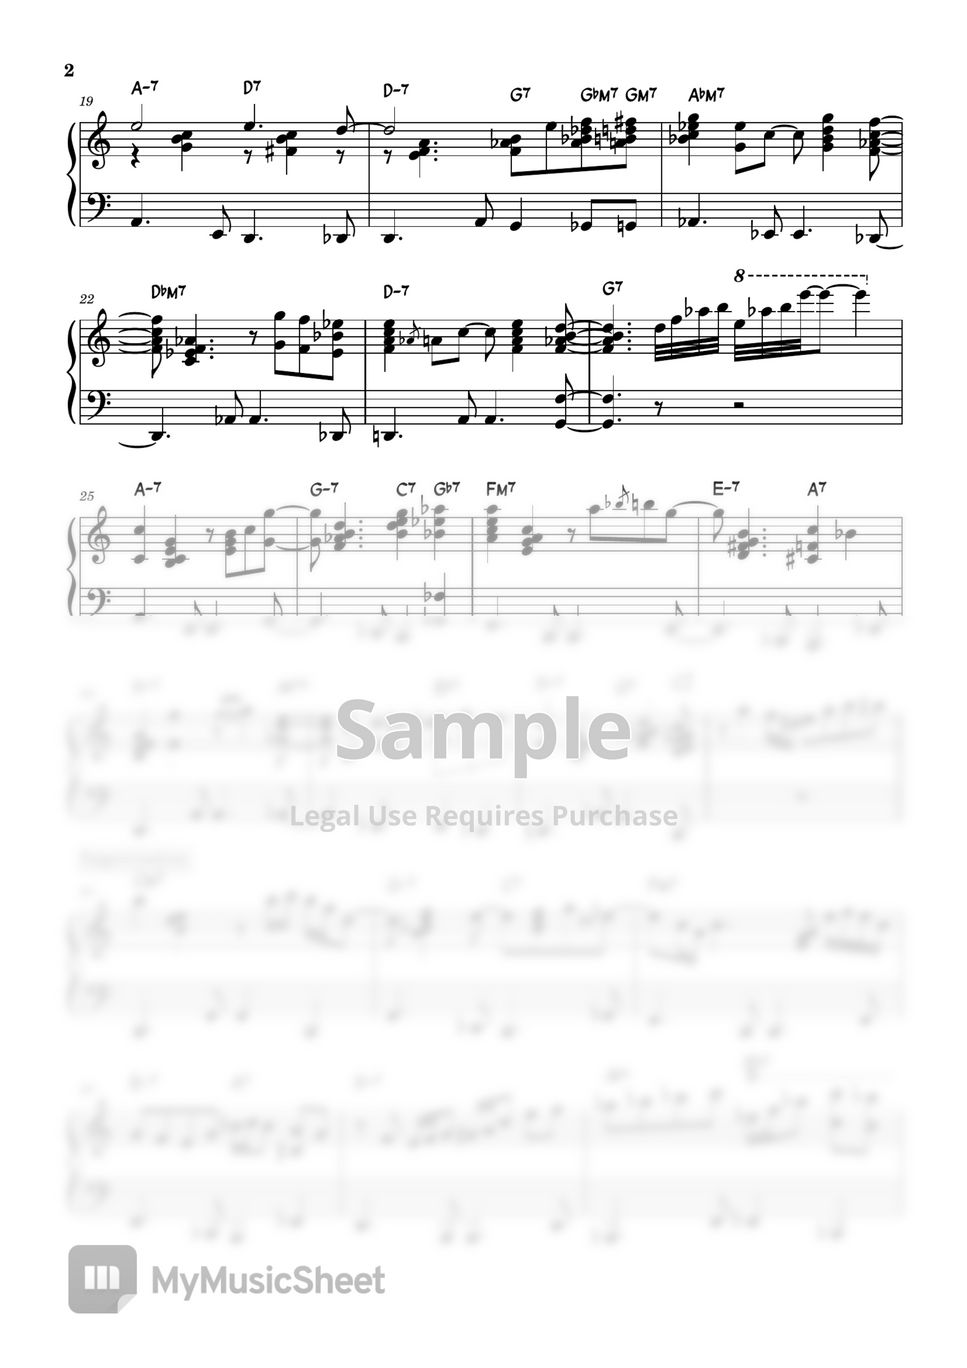 Mozart - Twinkle Twinkle Little Star (Bossa Nova Ver.) by KoYumi Music